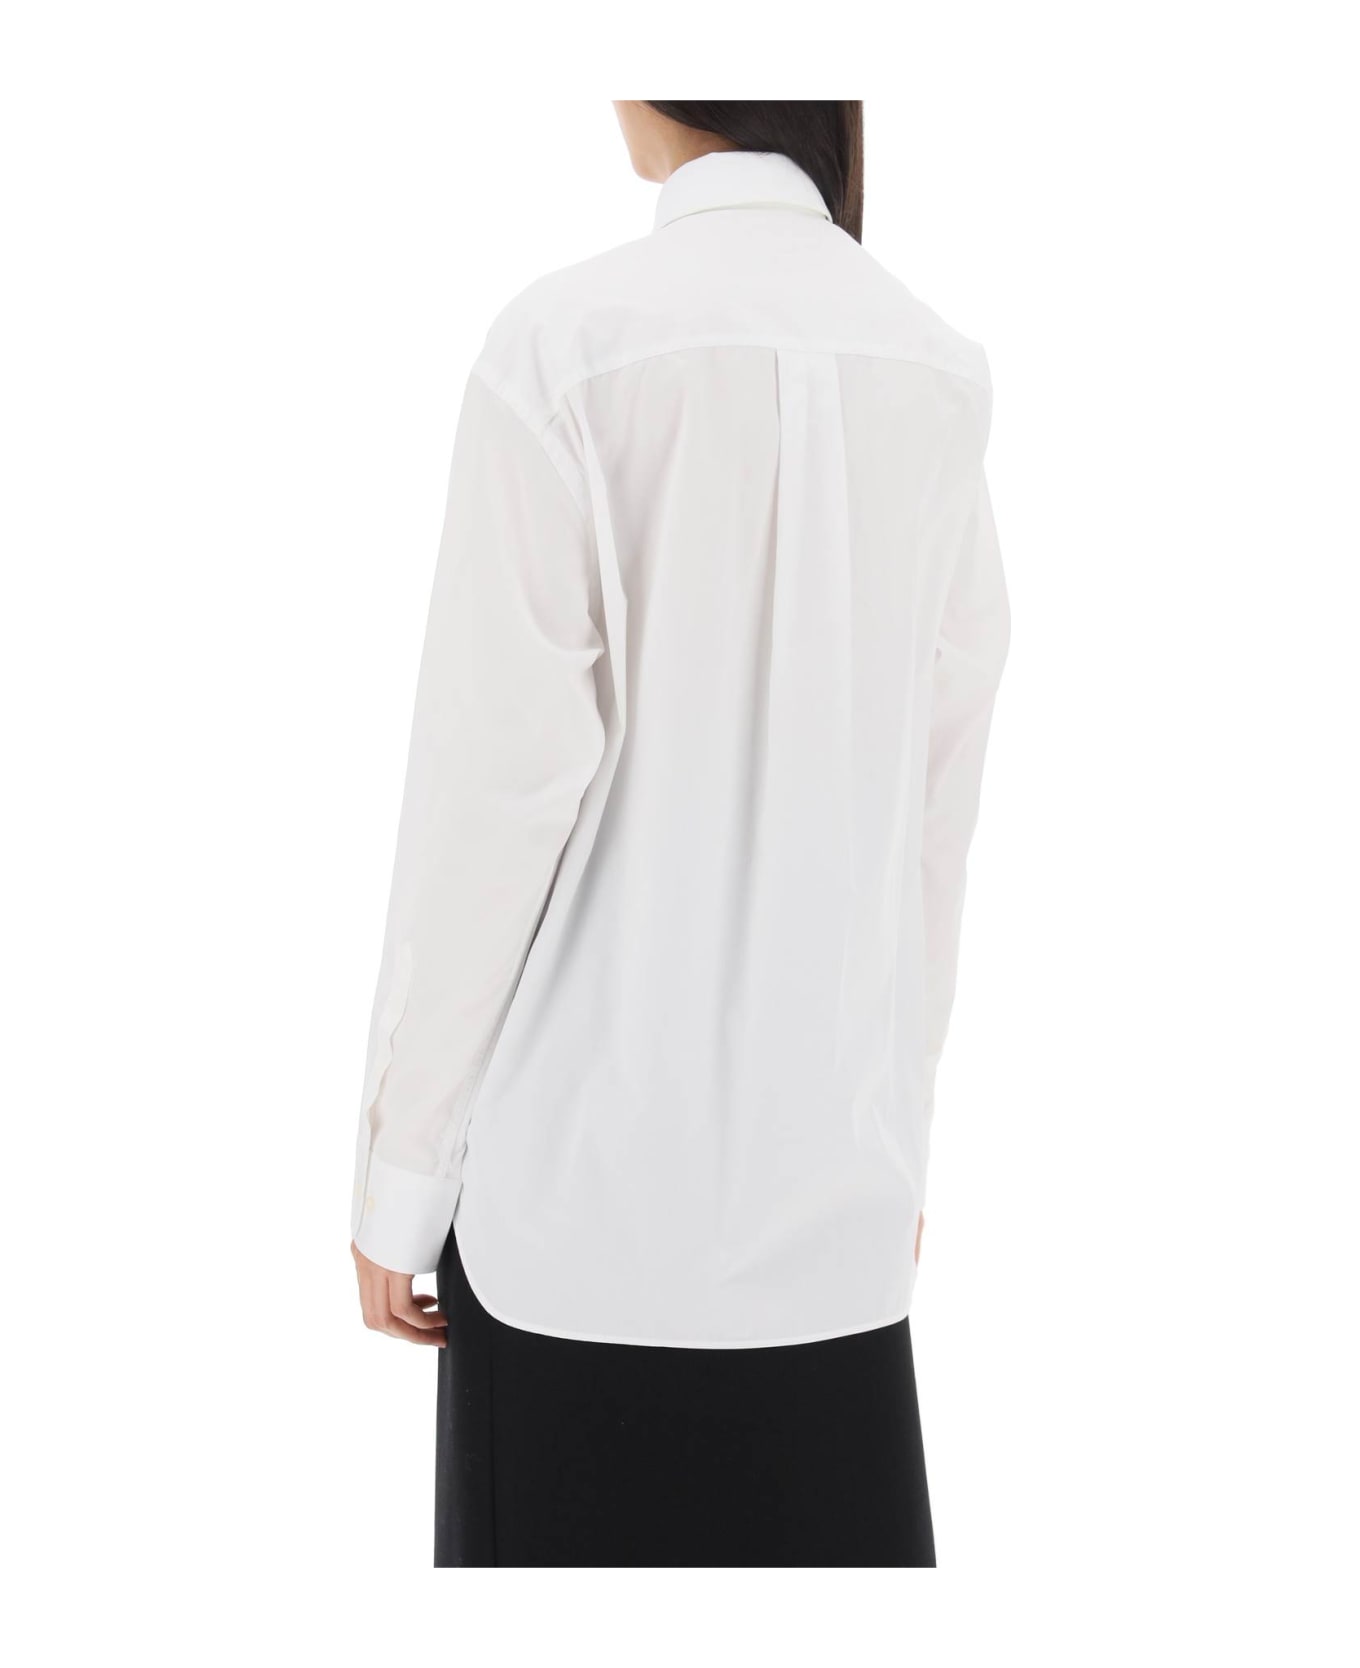 WARDROBE.NYC Maxi Shirt In Cotton Batista - WHITE (White)